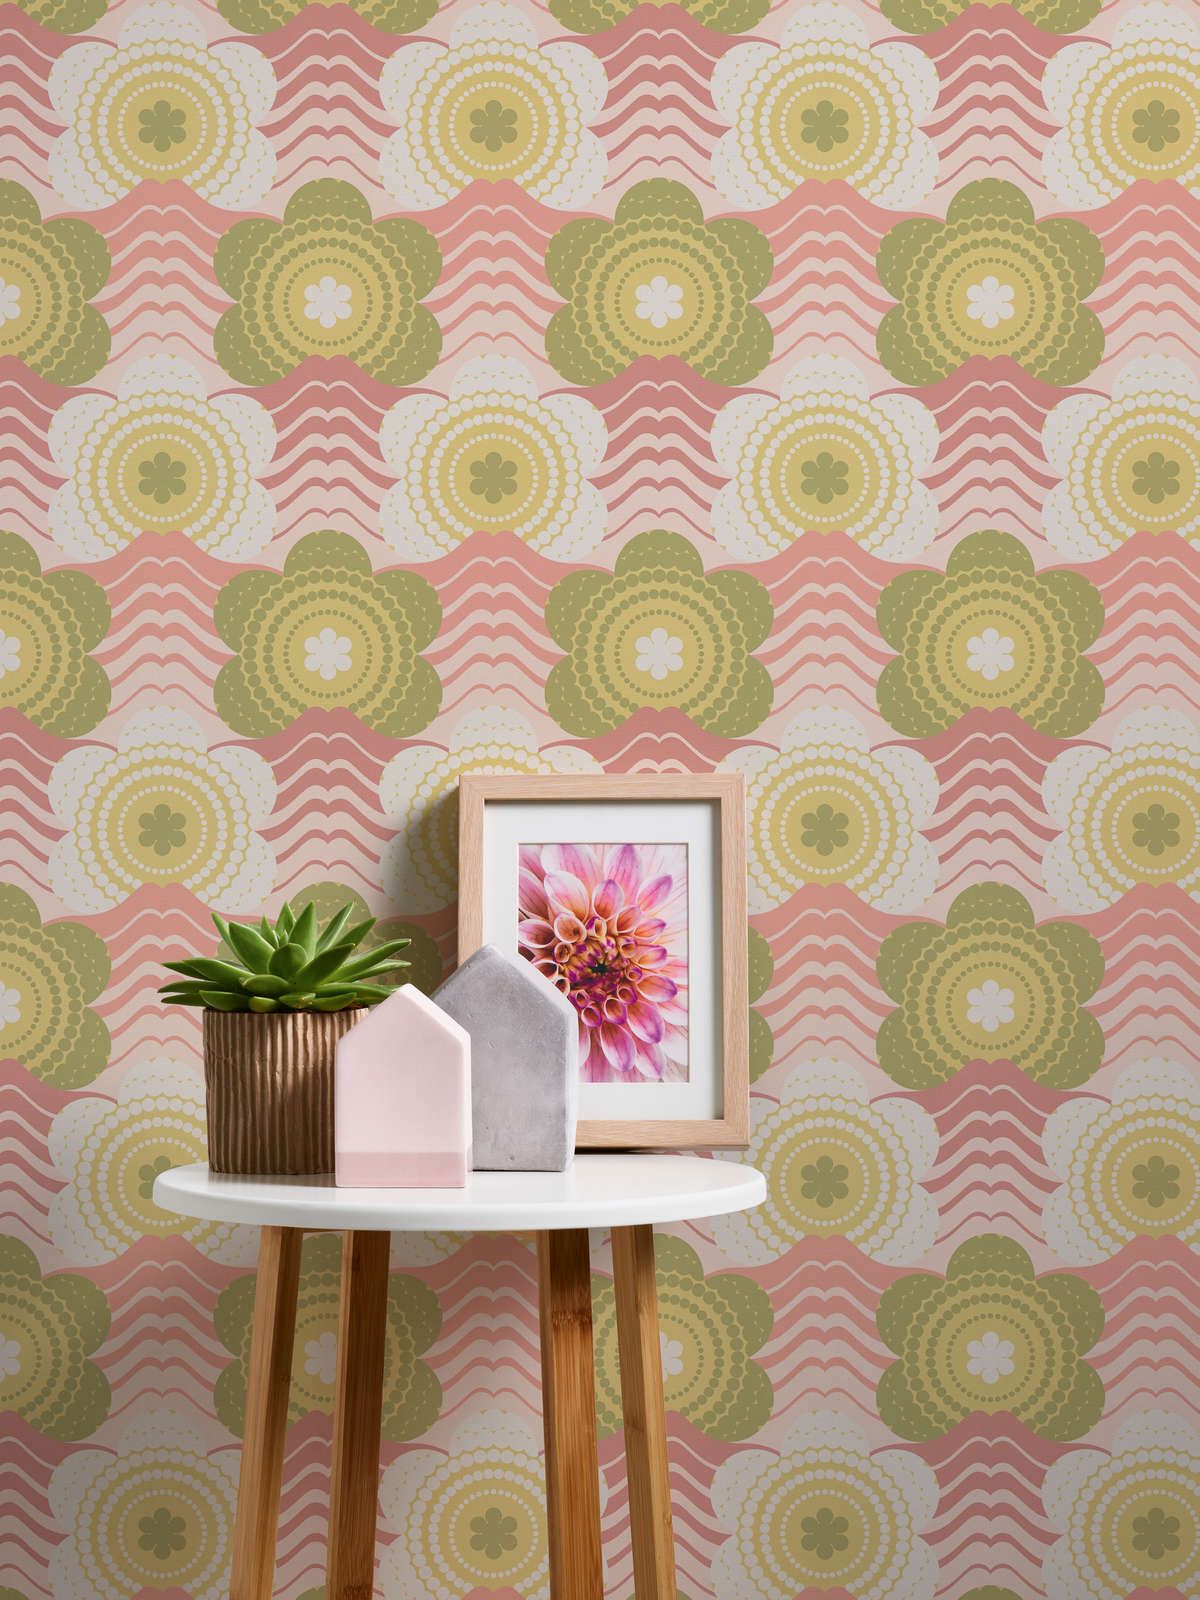             Retrostijl golven en bloemenpatroon op behang met lichte structuur - roze, groen, crème
        